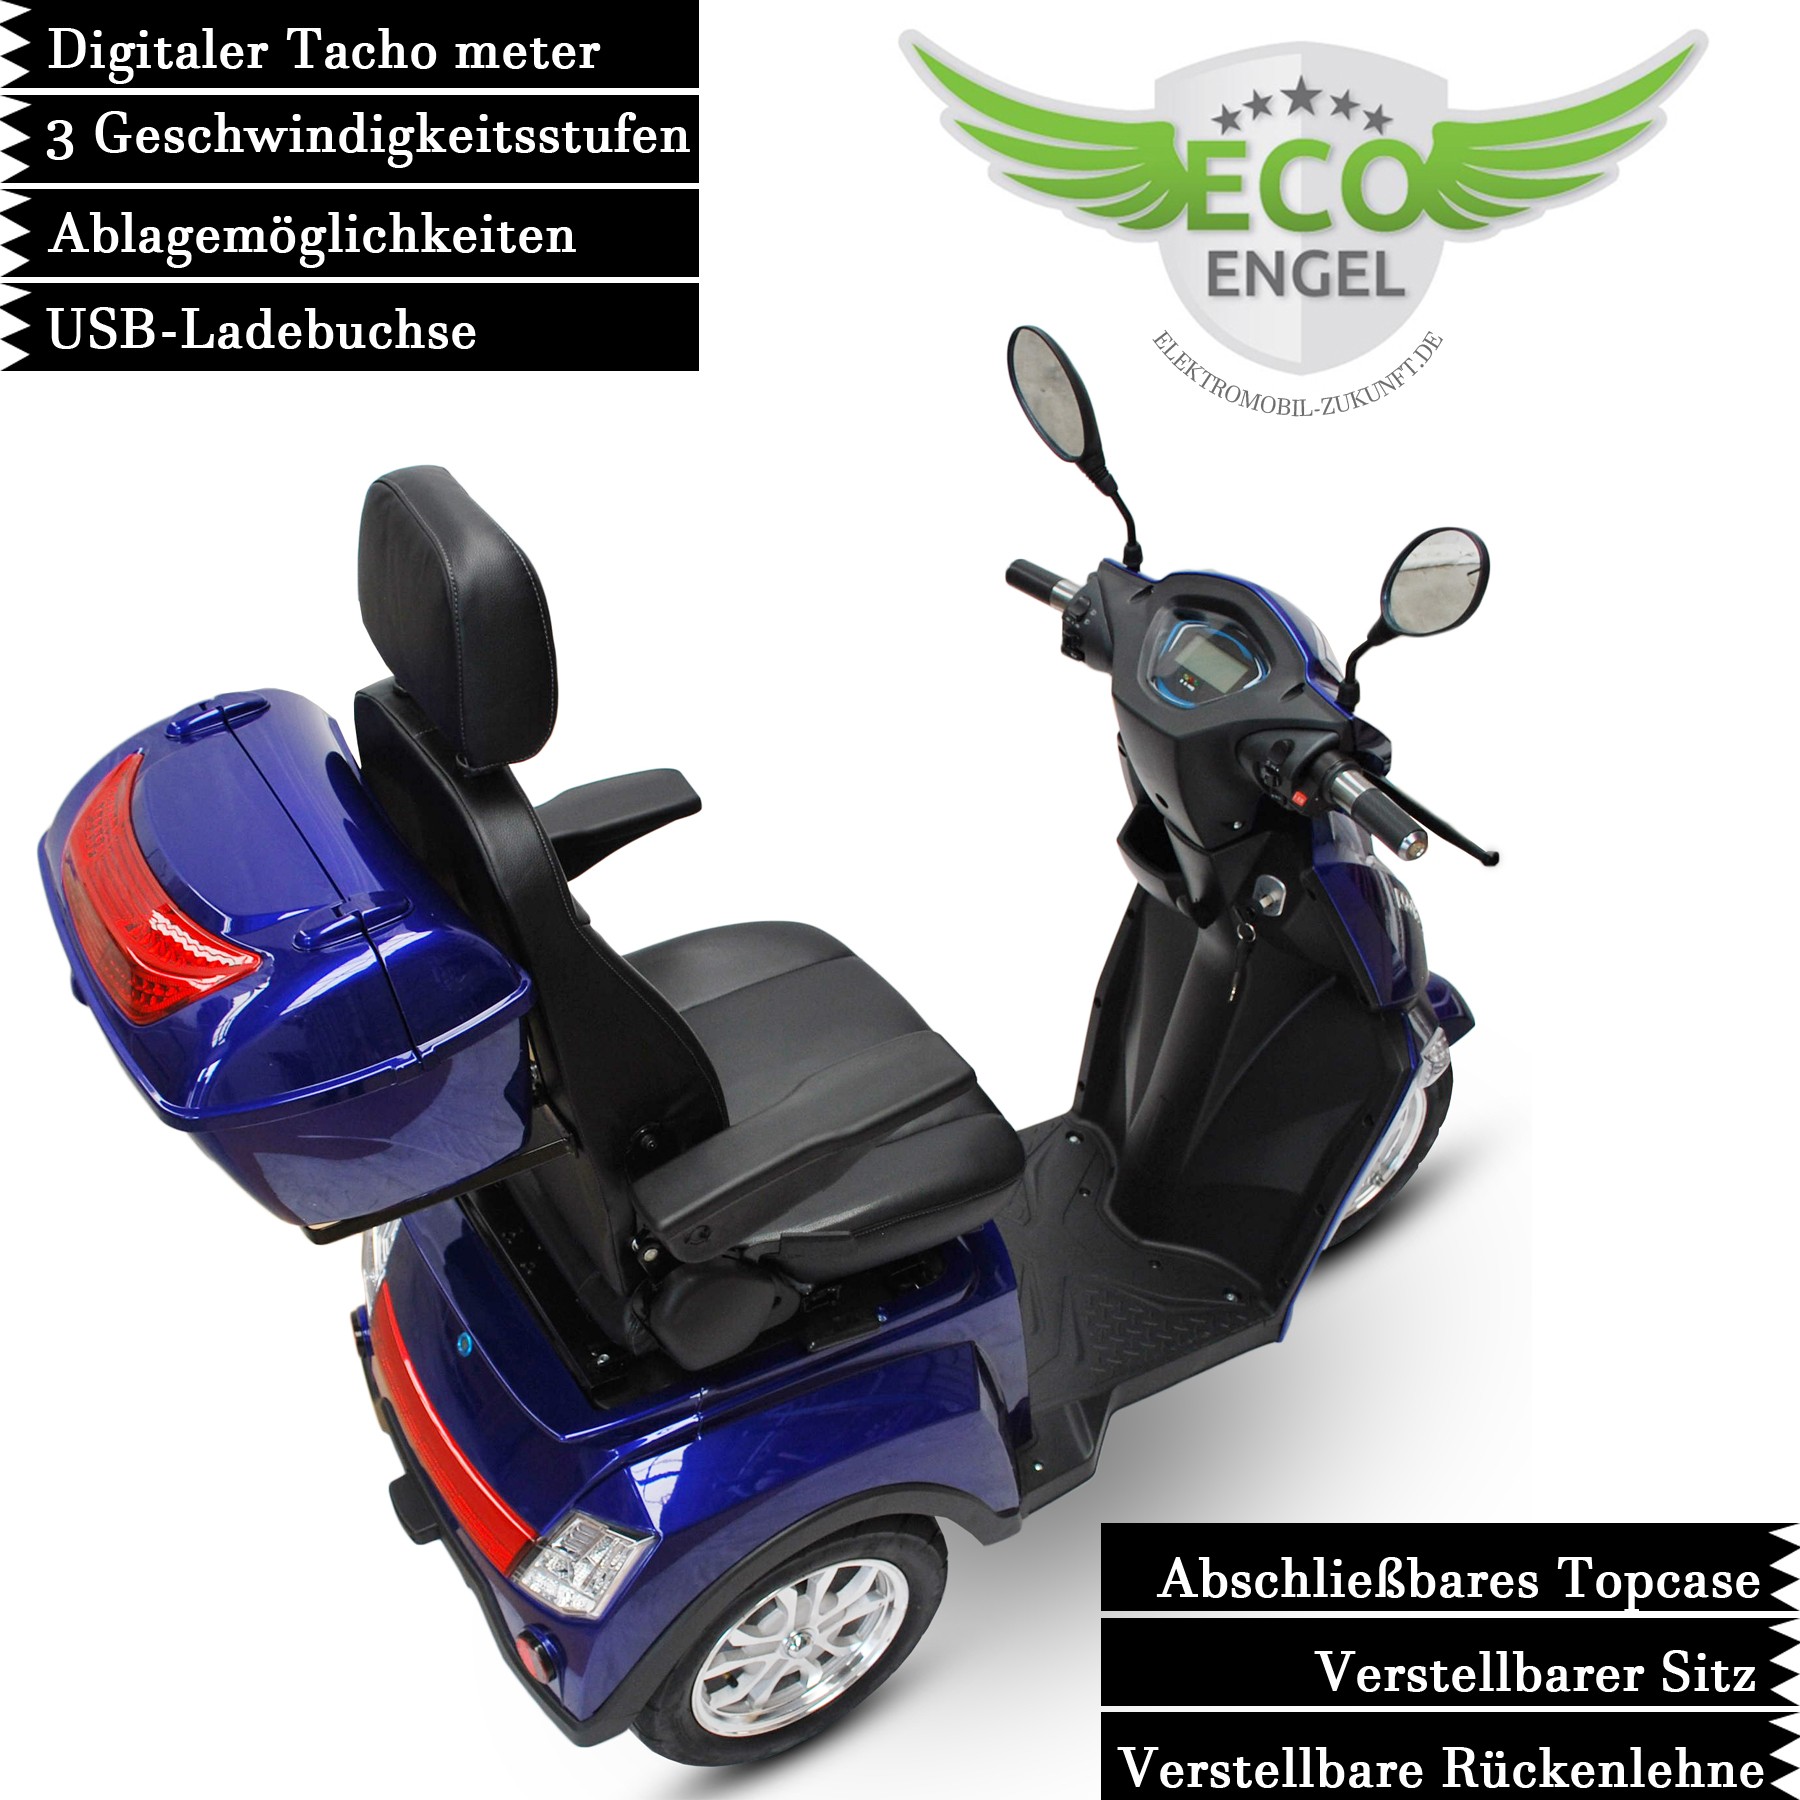 Elektro Scooter von Electro-fun Seniorenmobil ENGEL, ECO